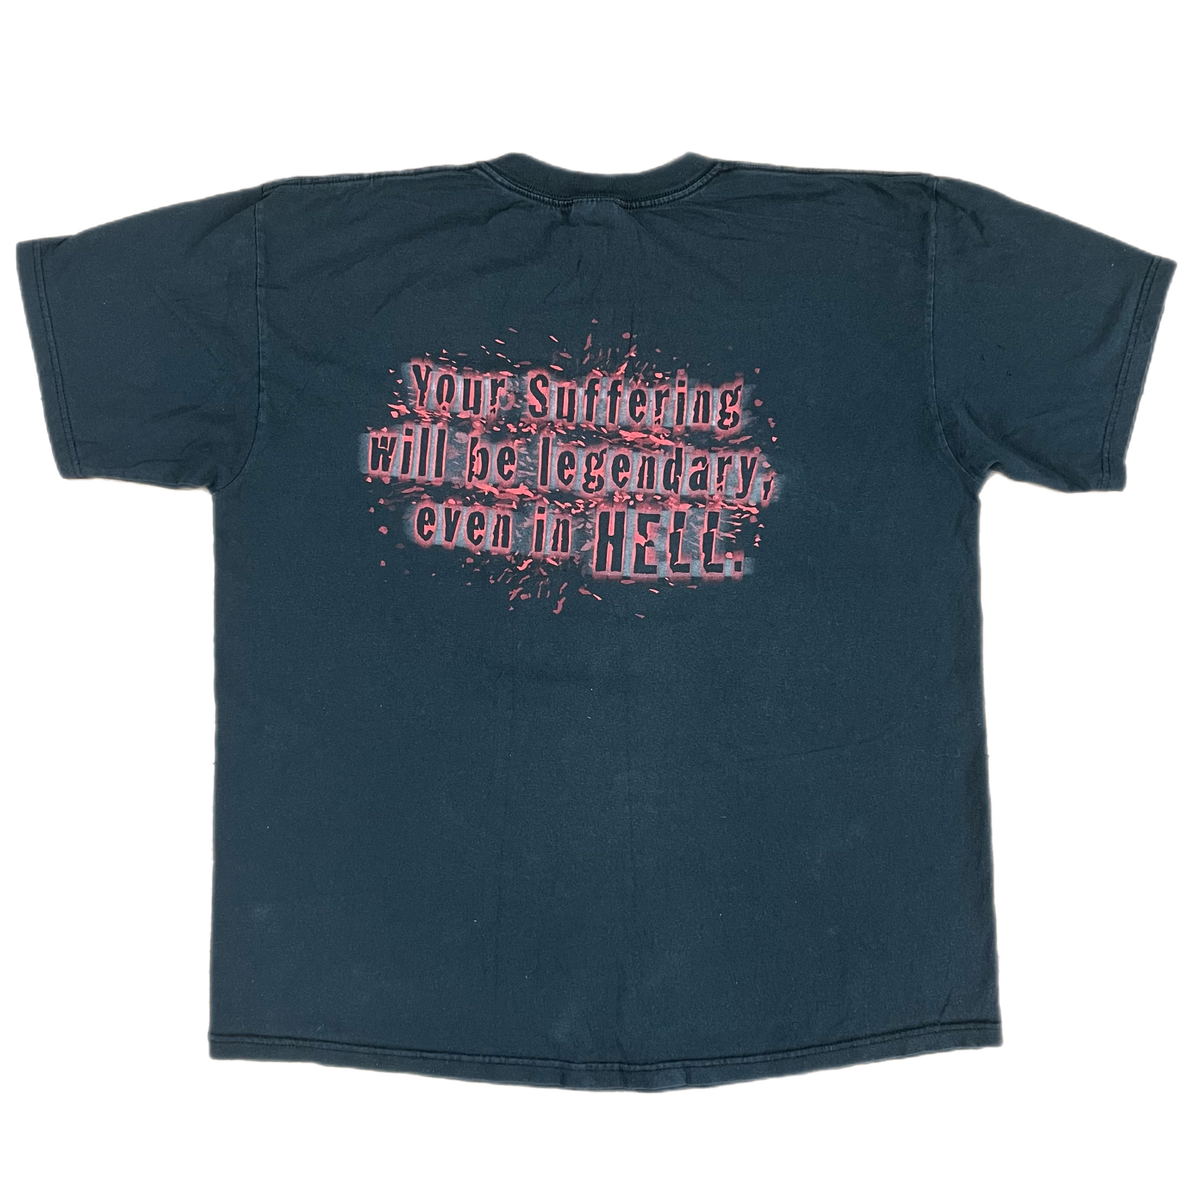 Vintage Hellraiser &quot;Miramax Film Corp&quot; Promotional T-Shirt